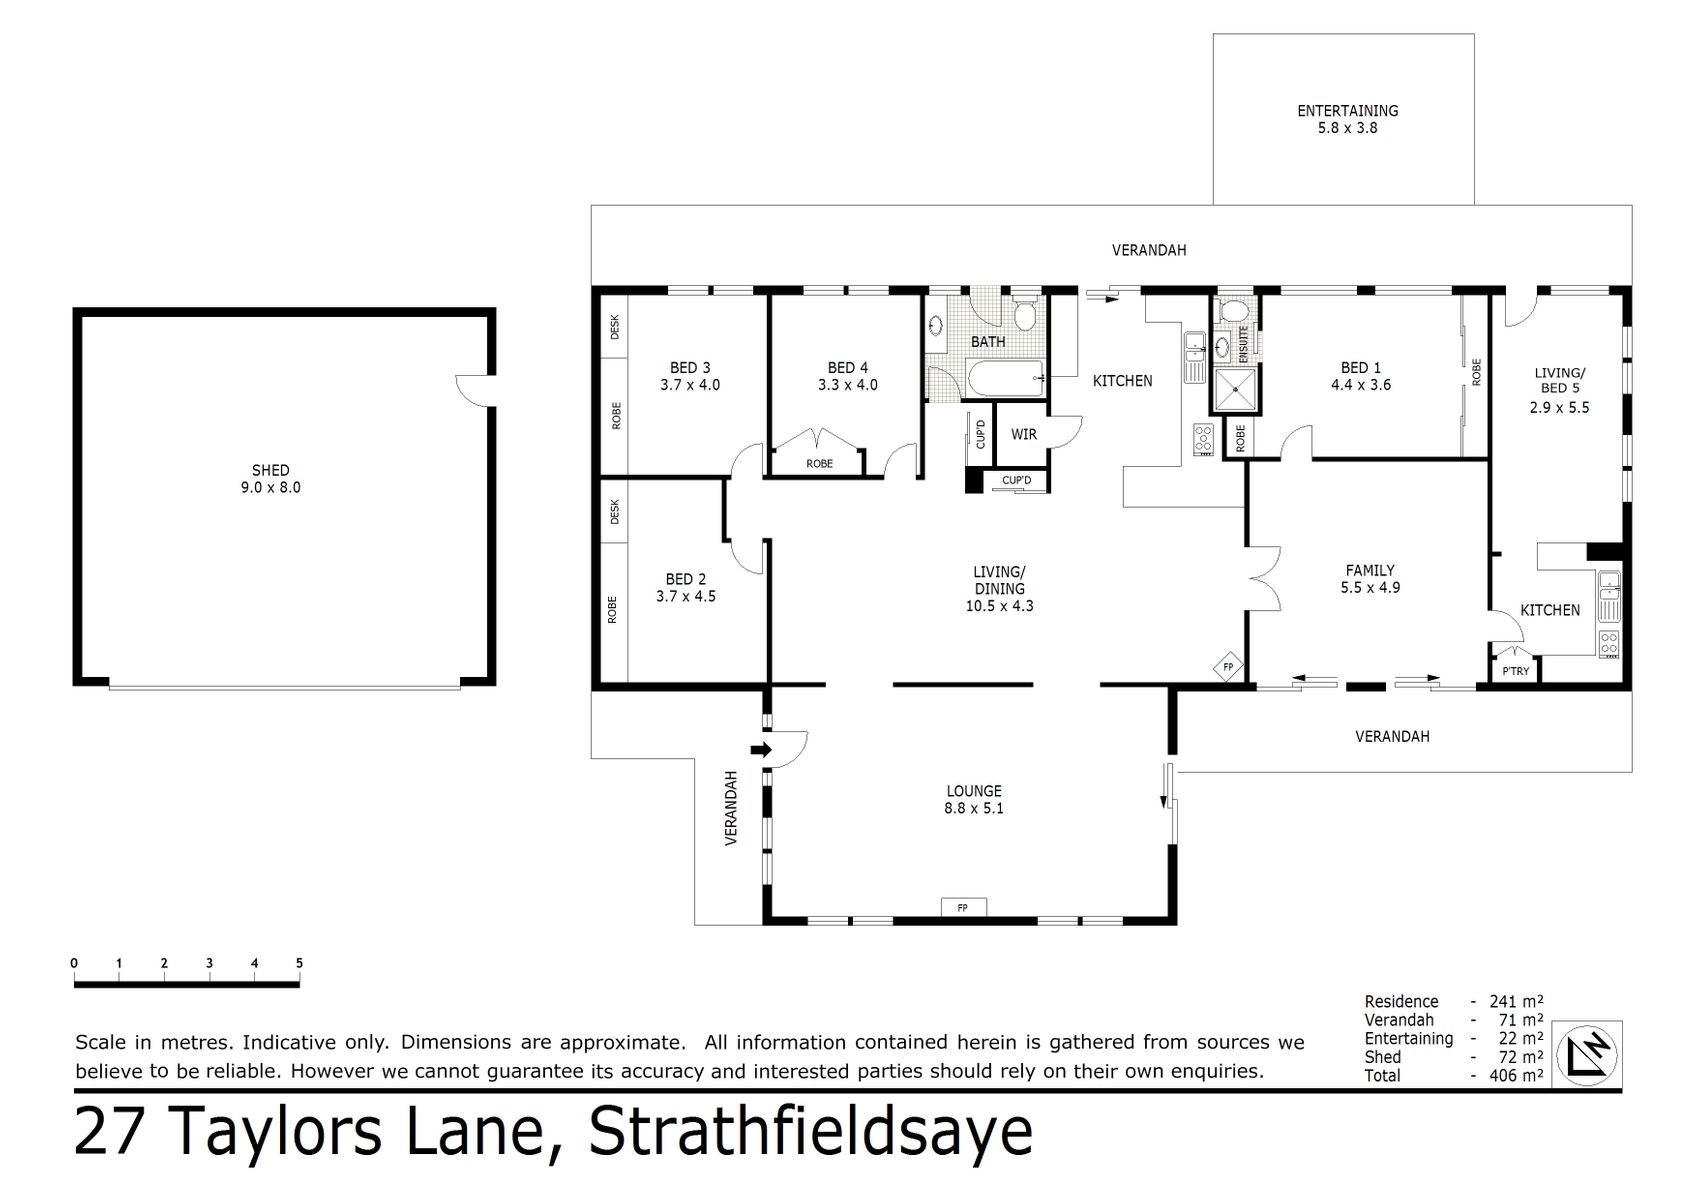 27 Taylors Lane Strathfieldsaye (01 DEC 2020) 241sqm